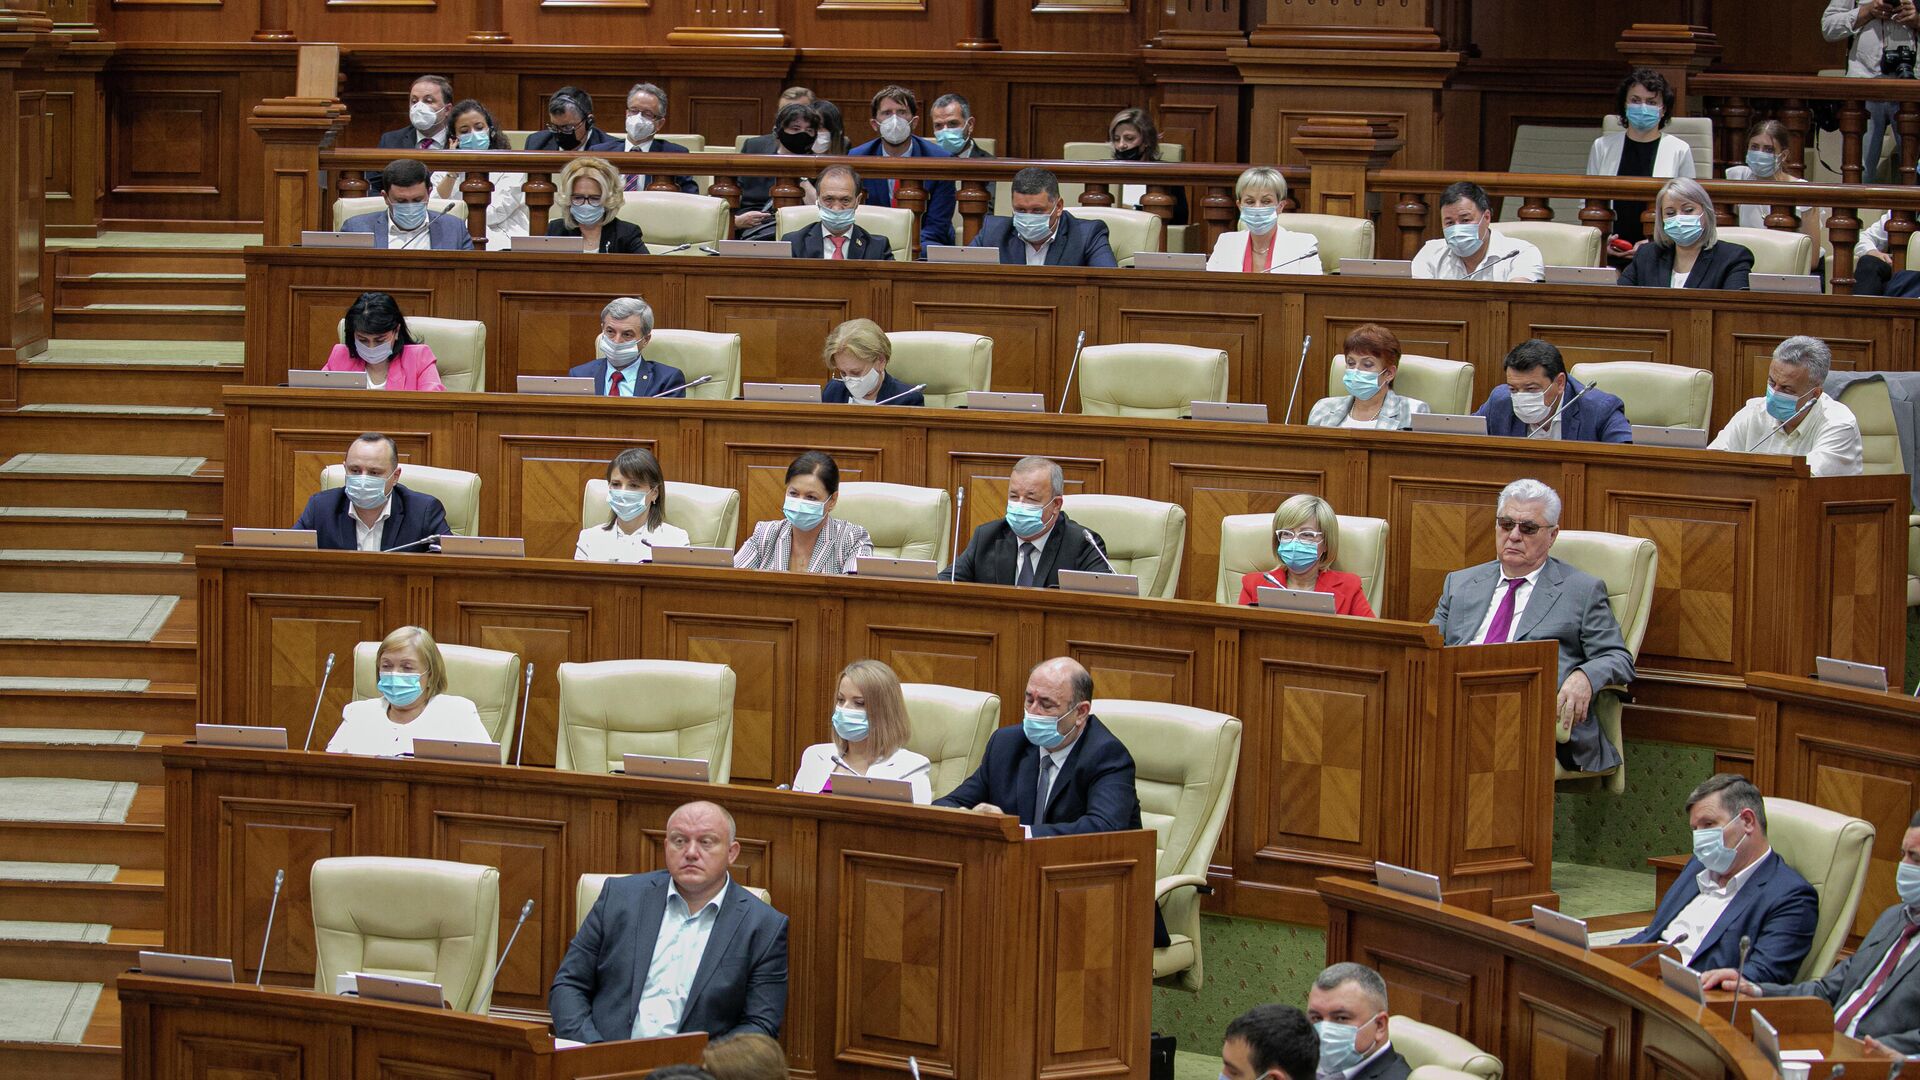 Ședința de constituire a Parlamentului de Legislatura a XI-a - 26 iulie 2021 - Sputnik Moldova, 1920, 01.09.2021